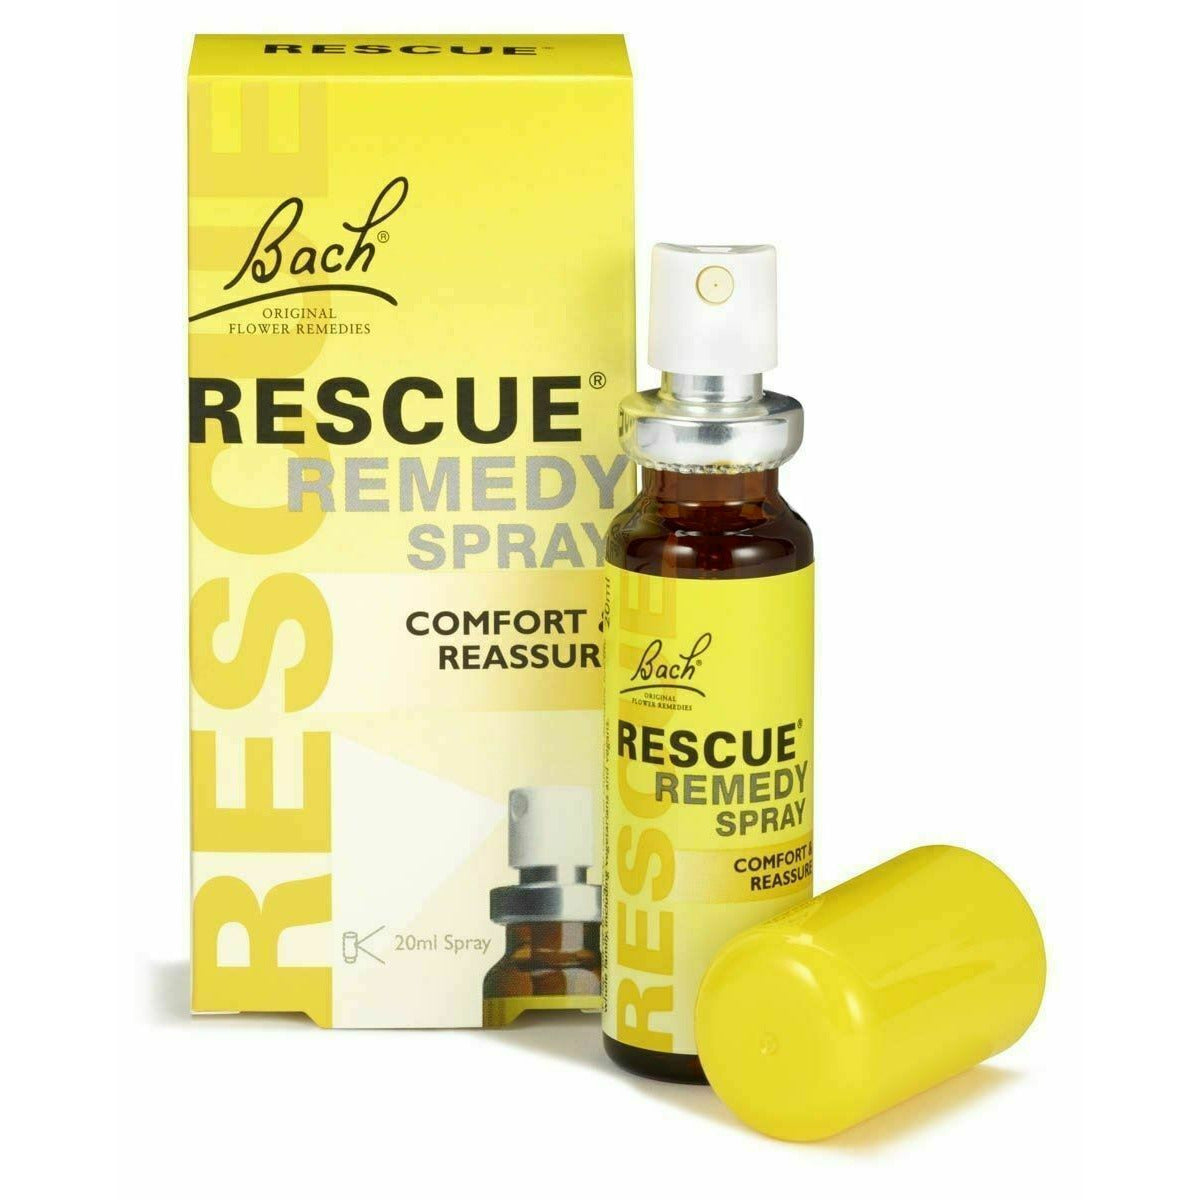 Bach rescue remedy spray 20ml